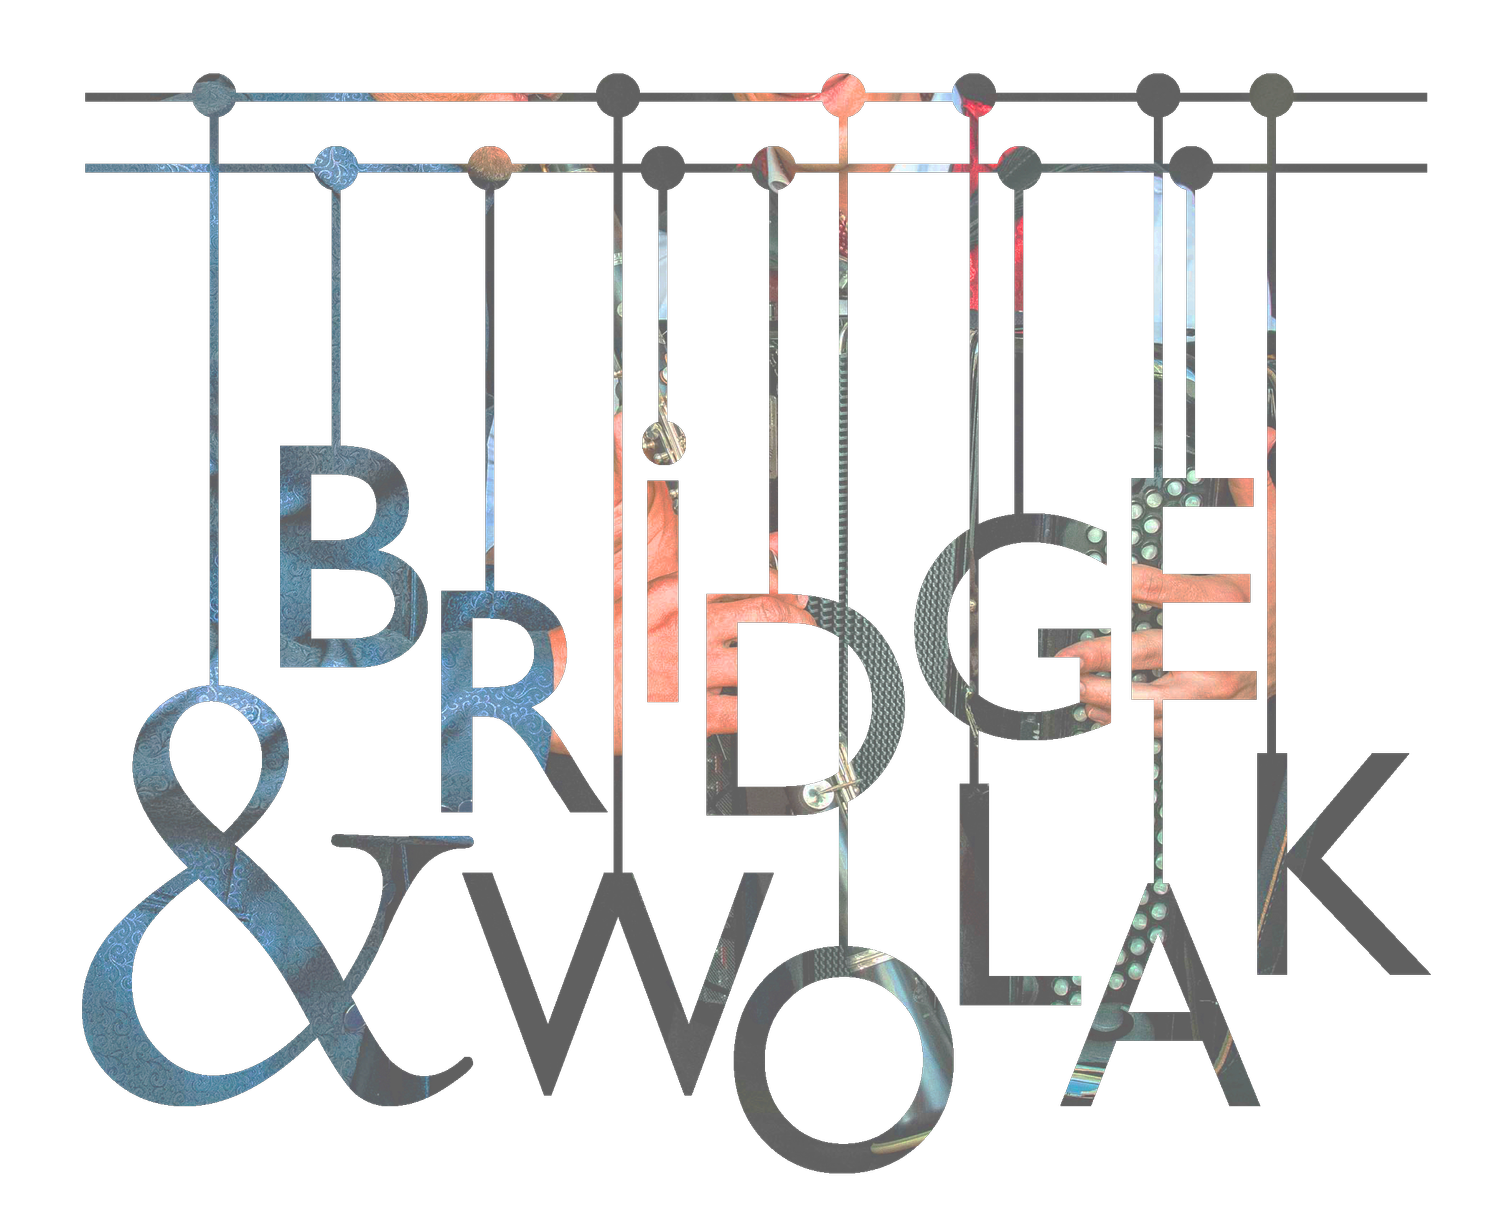 Bridge & Wolak